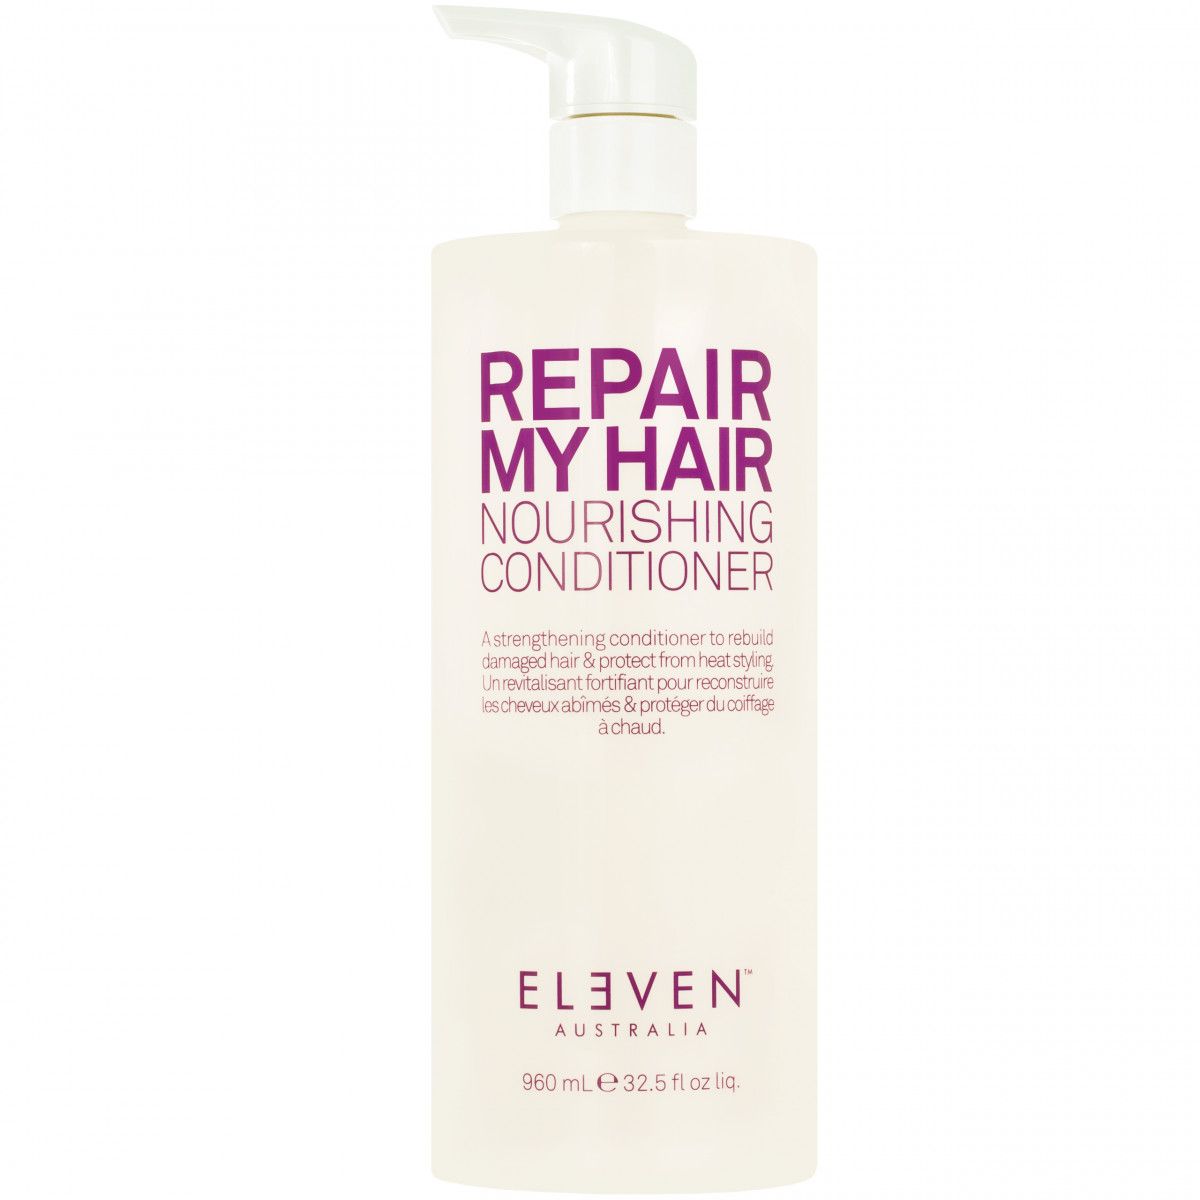 Eleven Australia Repair My Hair Nourishing Conditioner - odżywka regenerująca do włosów, 960ml